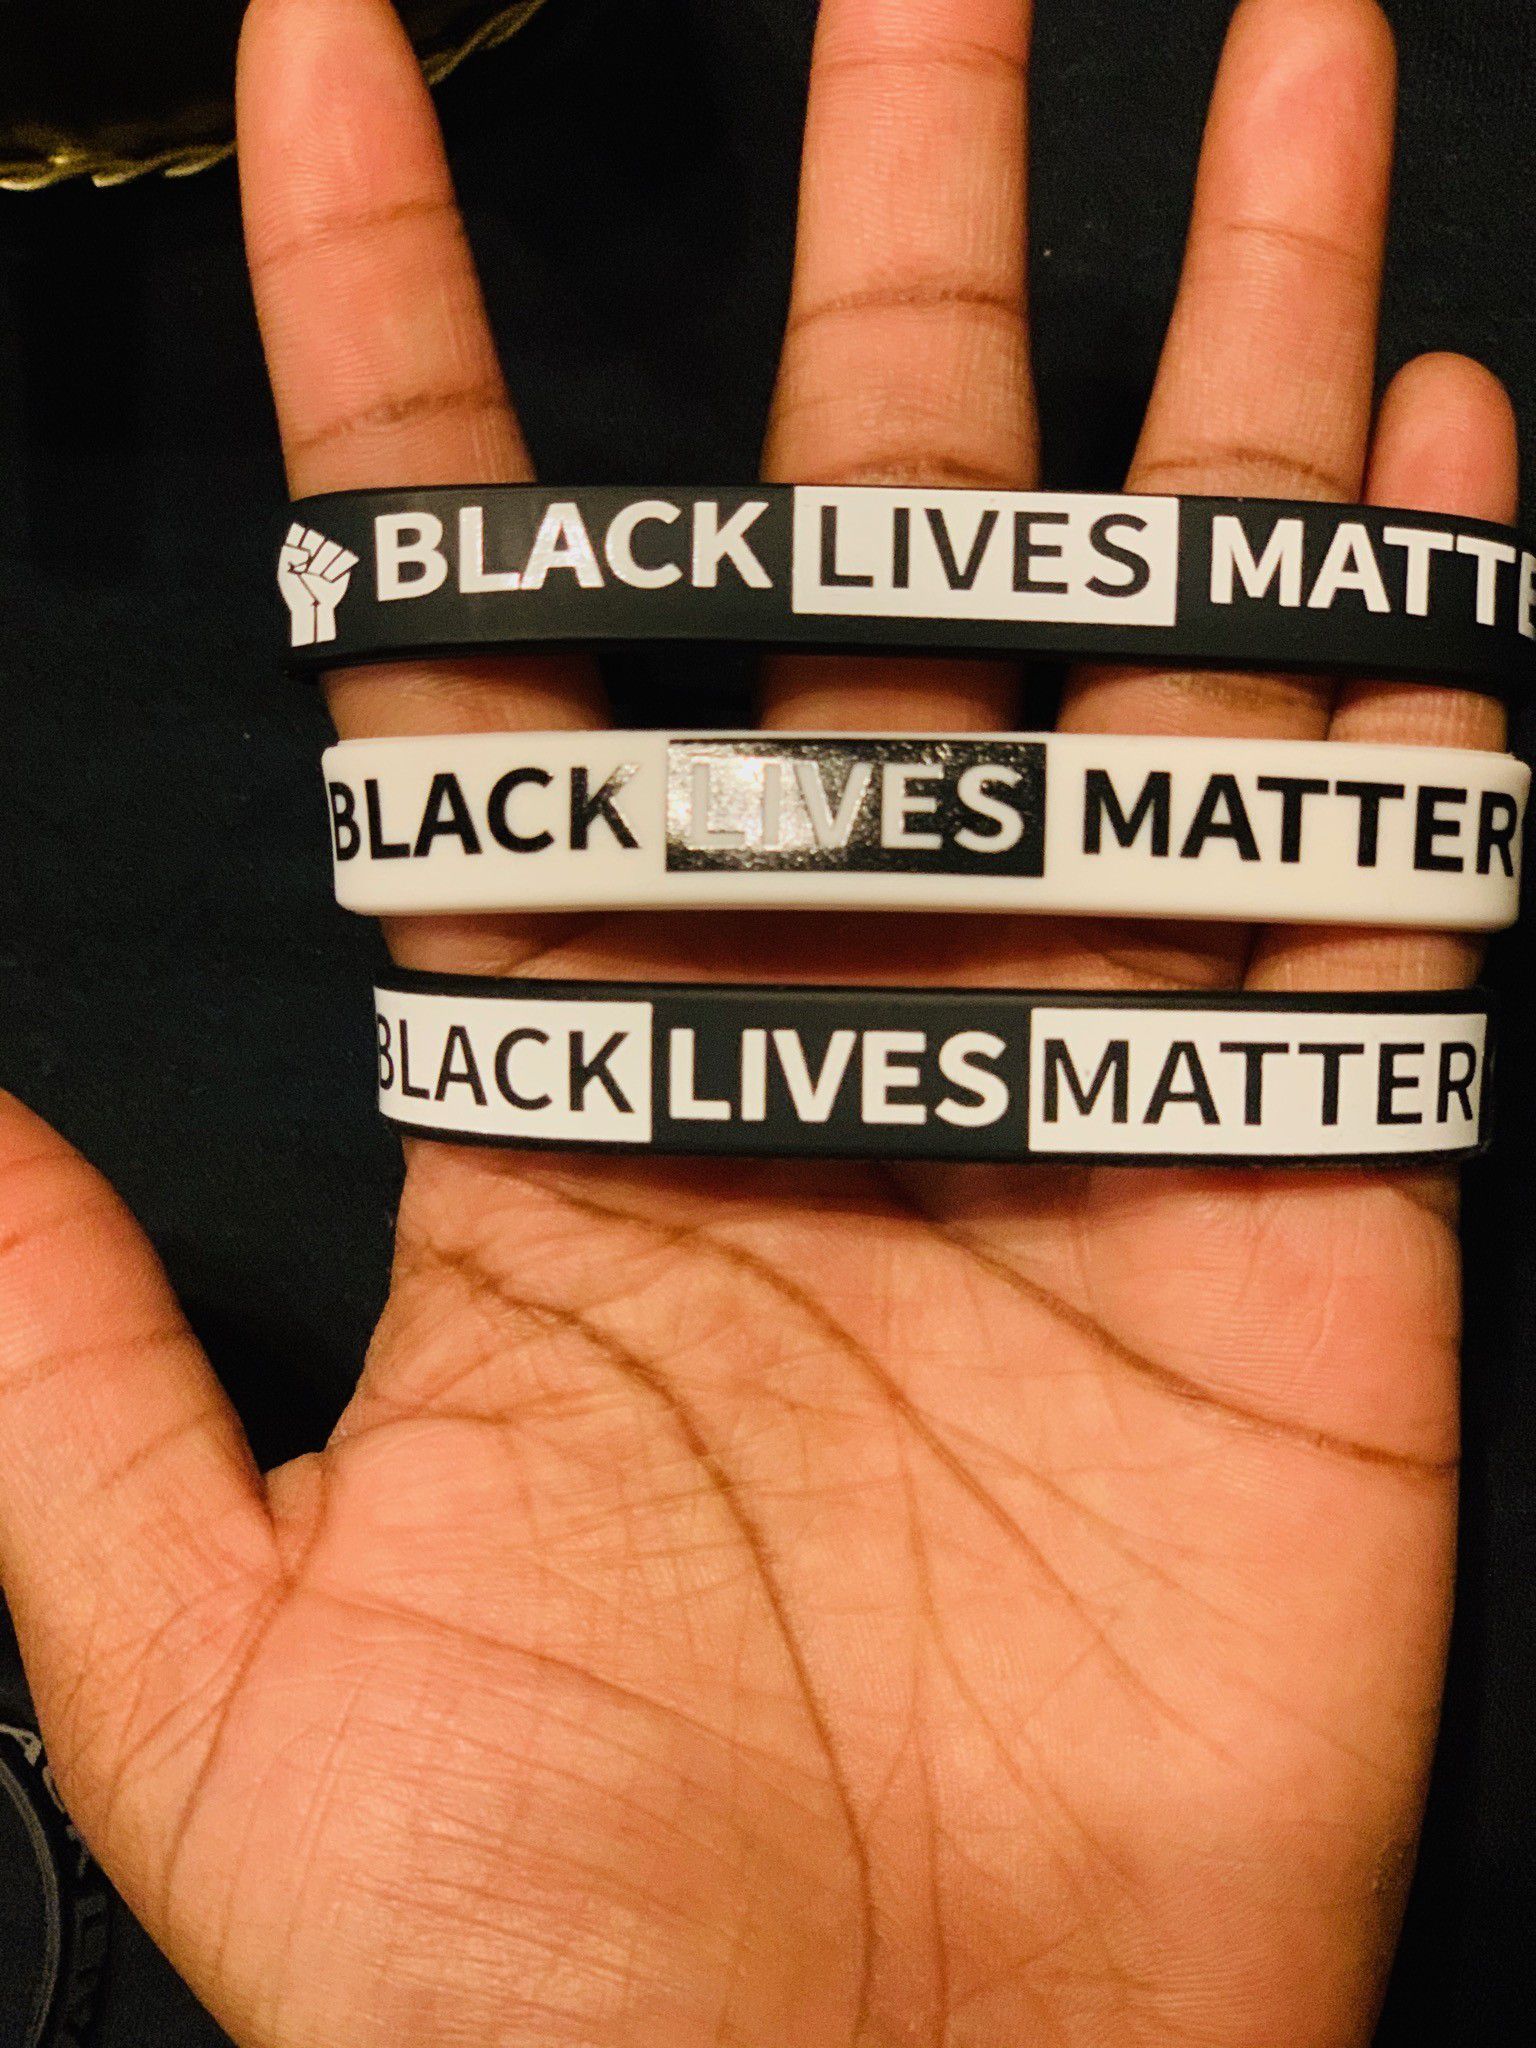 Black lives matter wristbands